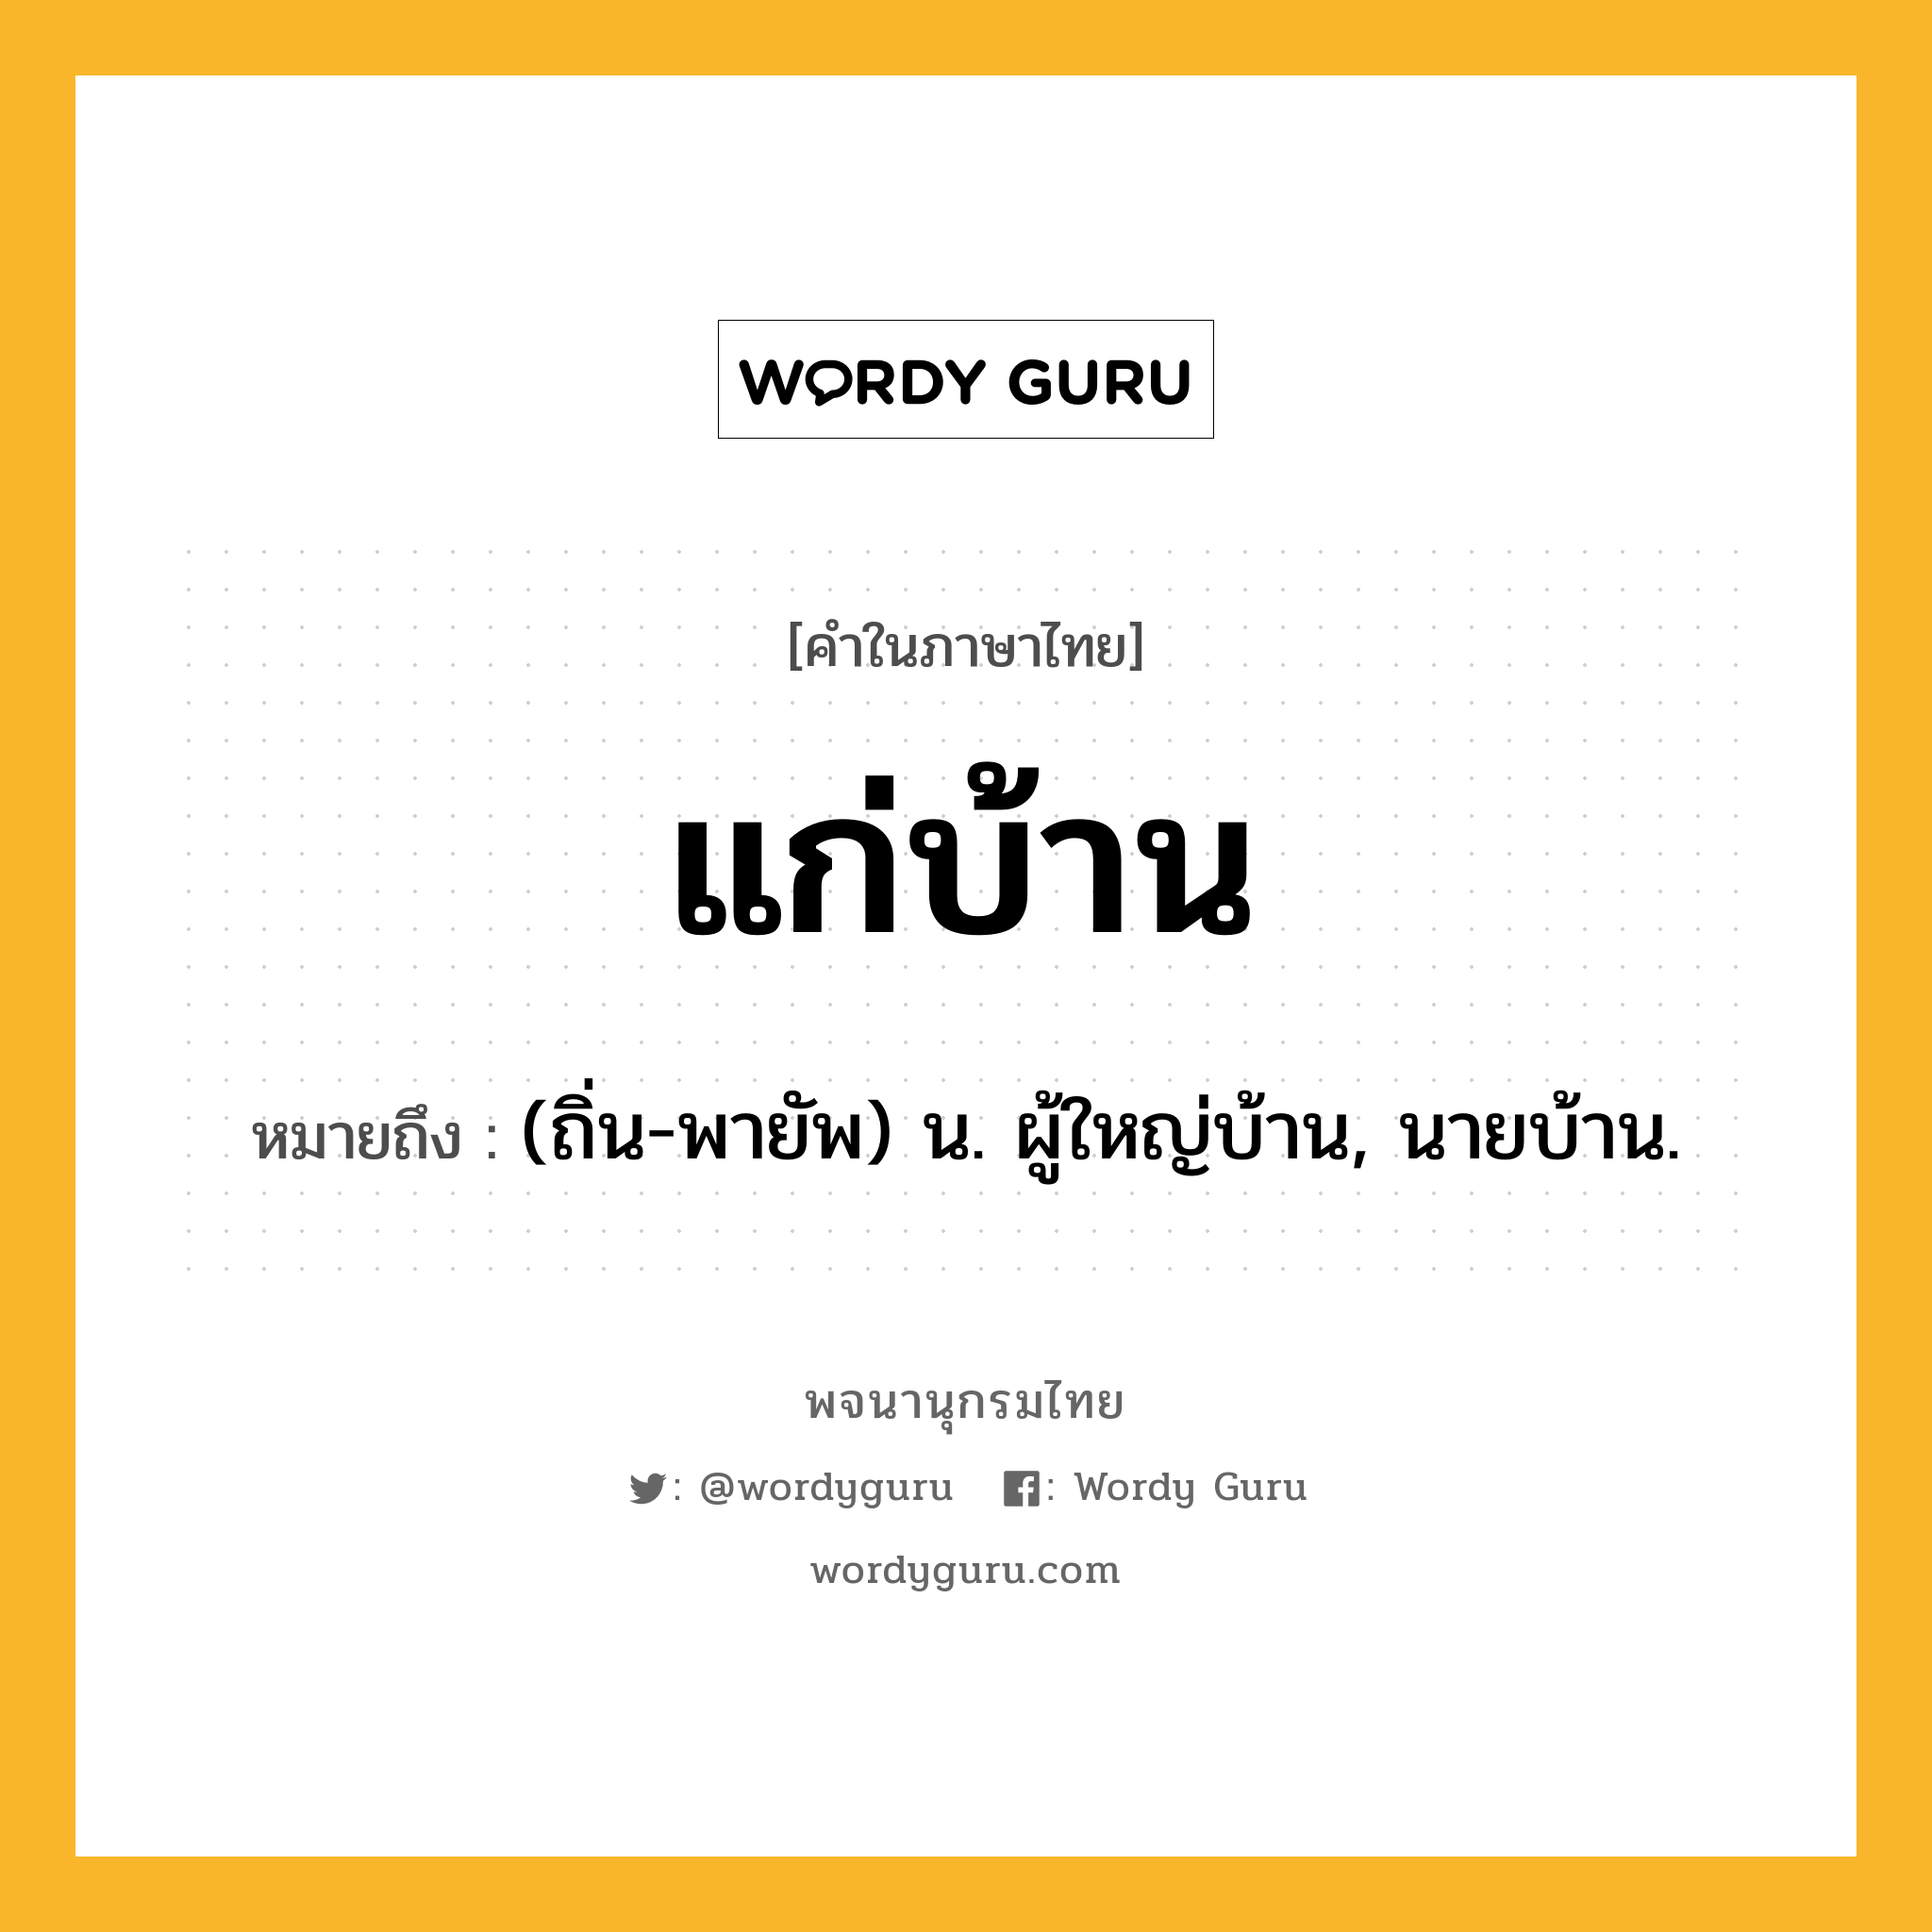 แก่บ้าน ความหมาย หมายถึงอะไร?, คำในภาษาไทย แก่บ้าน หมายถึง (ถิ่น-พายัพ) น. ผู้ใหญ่บ้าน, นายบ้าน.